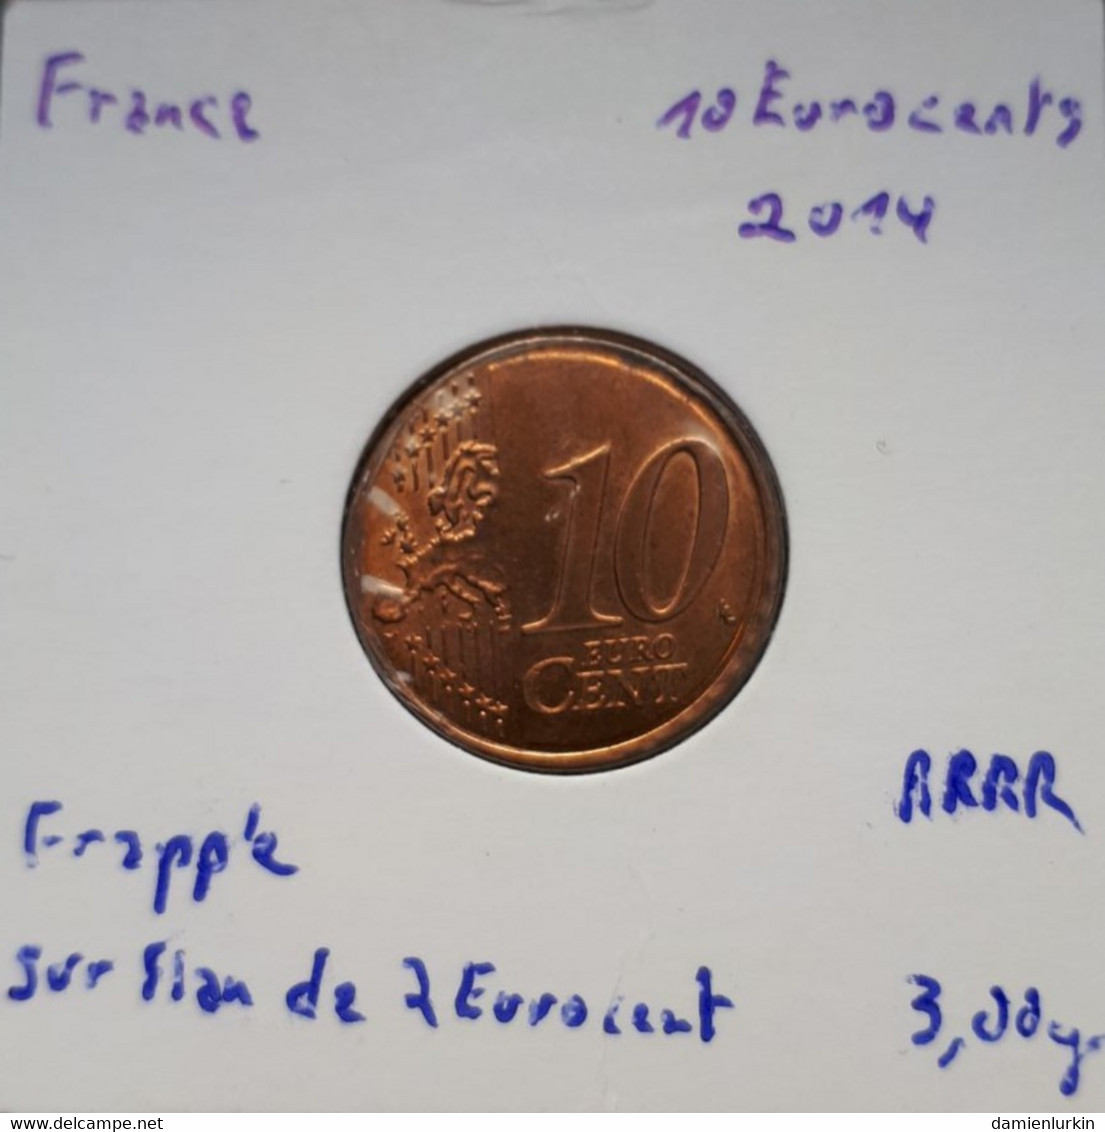 --PROMO 300€-- FRANCE EXCEPTIONNELLE 10 EURO CENT 2014 FRAPPEE SUR FLAN CUIVRE NON METALLIQUE !!!!! --LIRE DESCRIPTIF-- - Abarten Und Kuriositäten